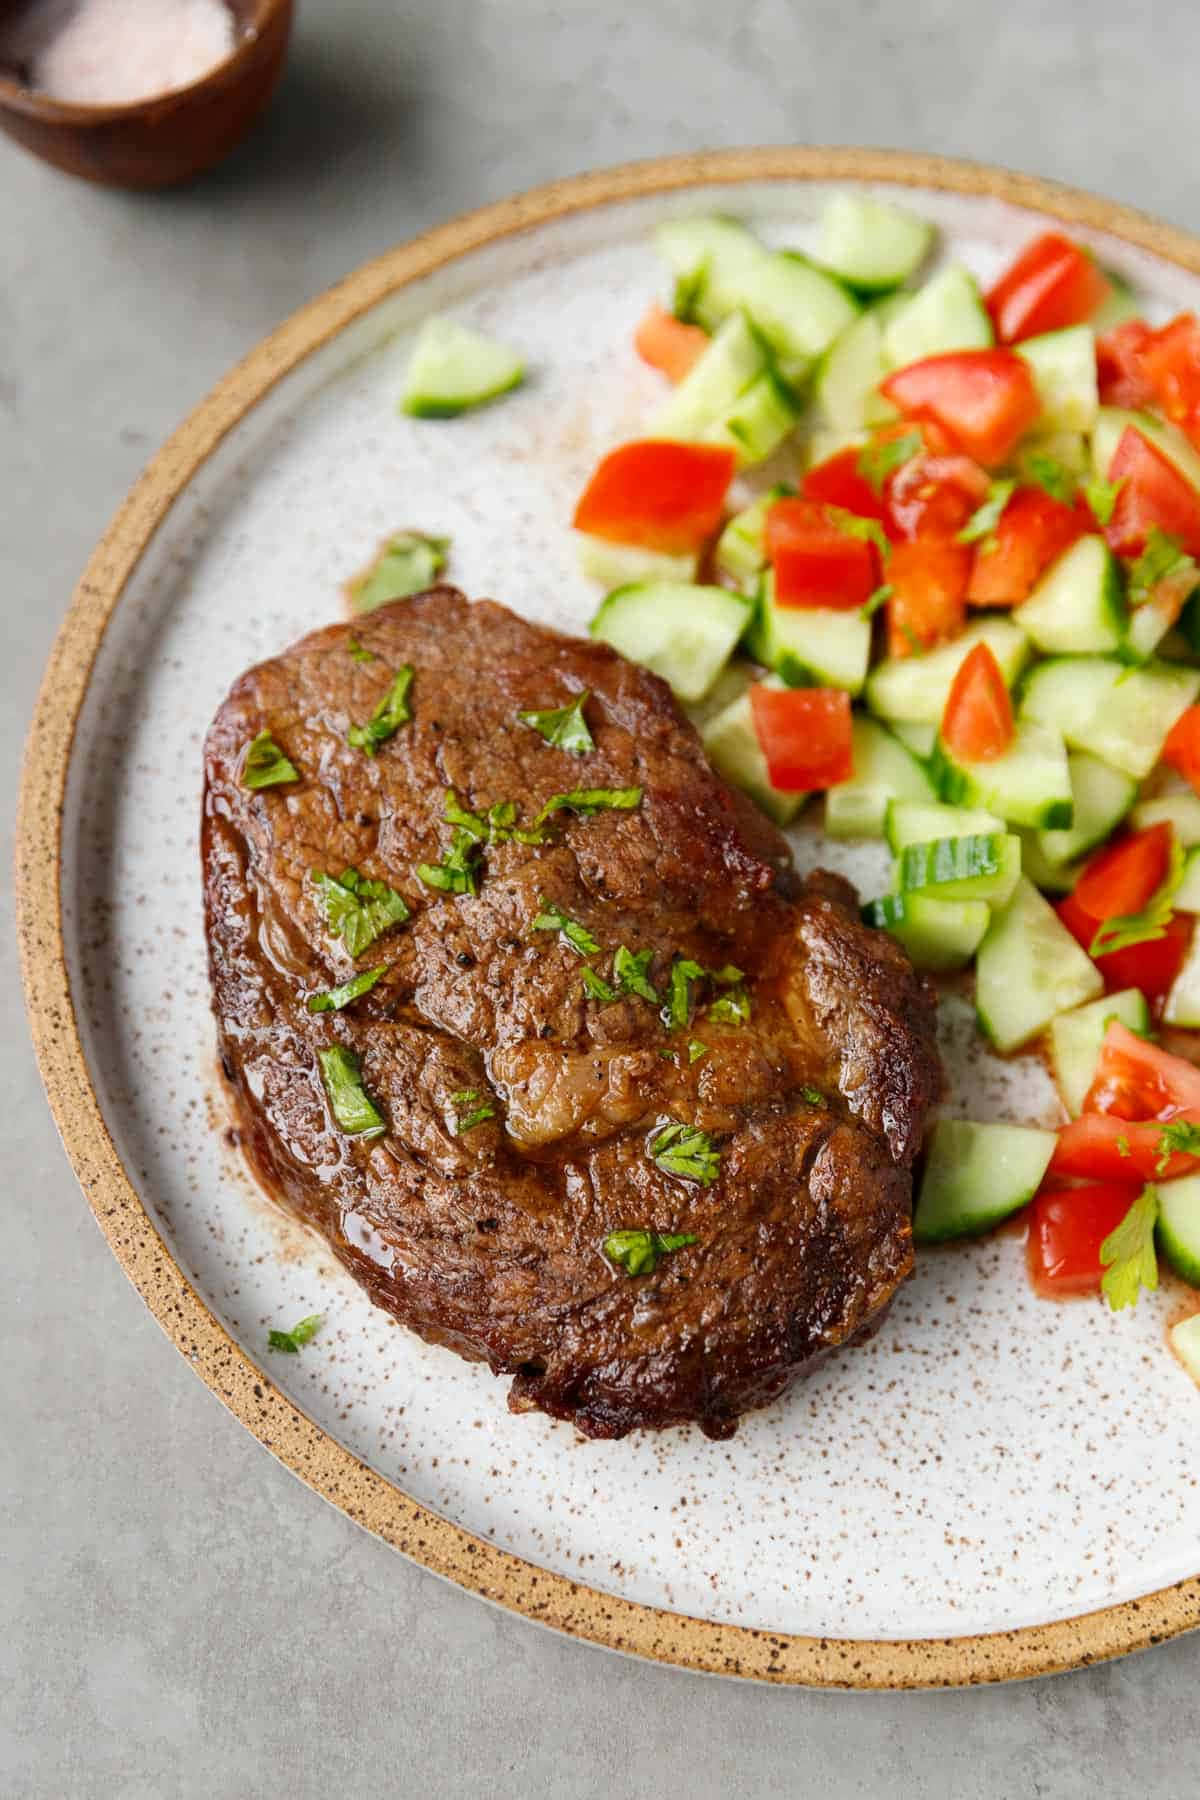 Enjoy tender and juicy Ribeye steak